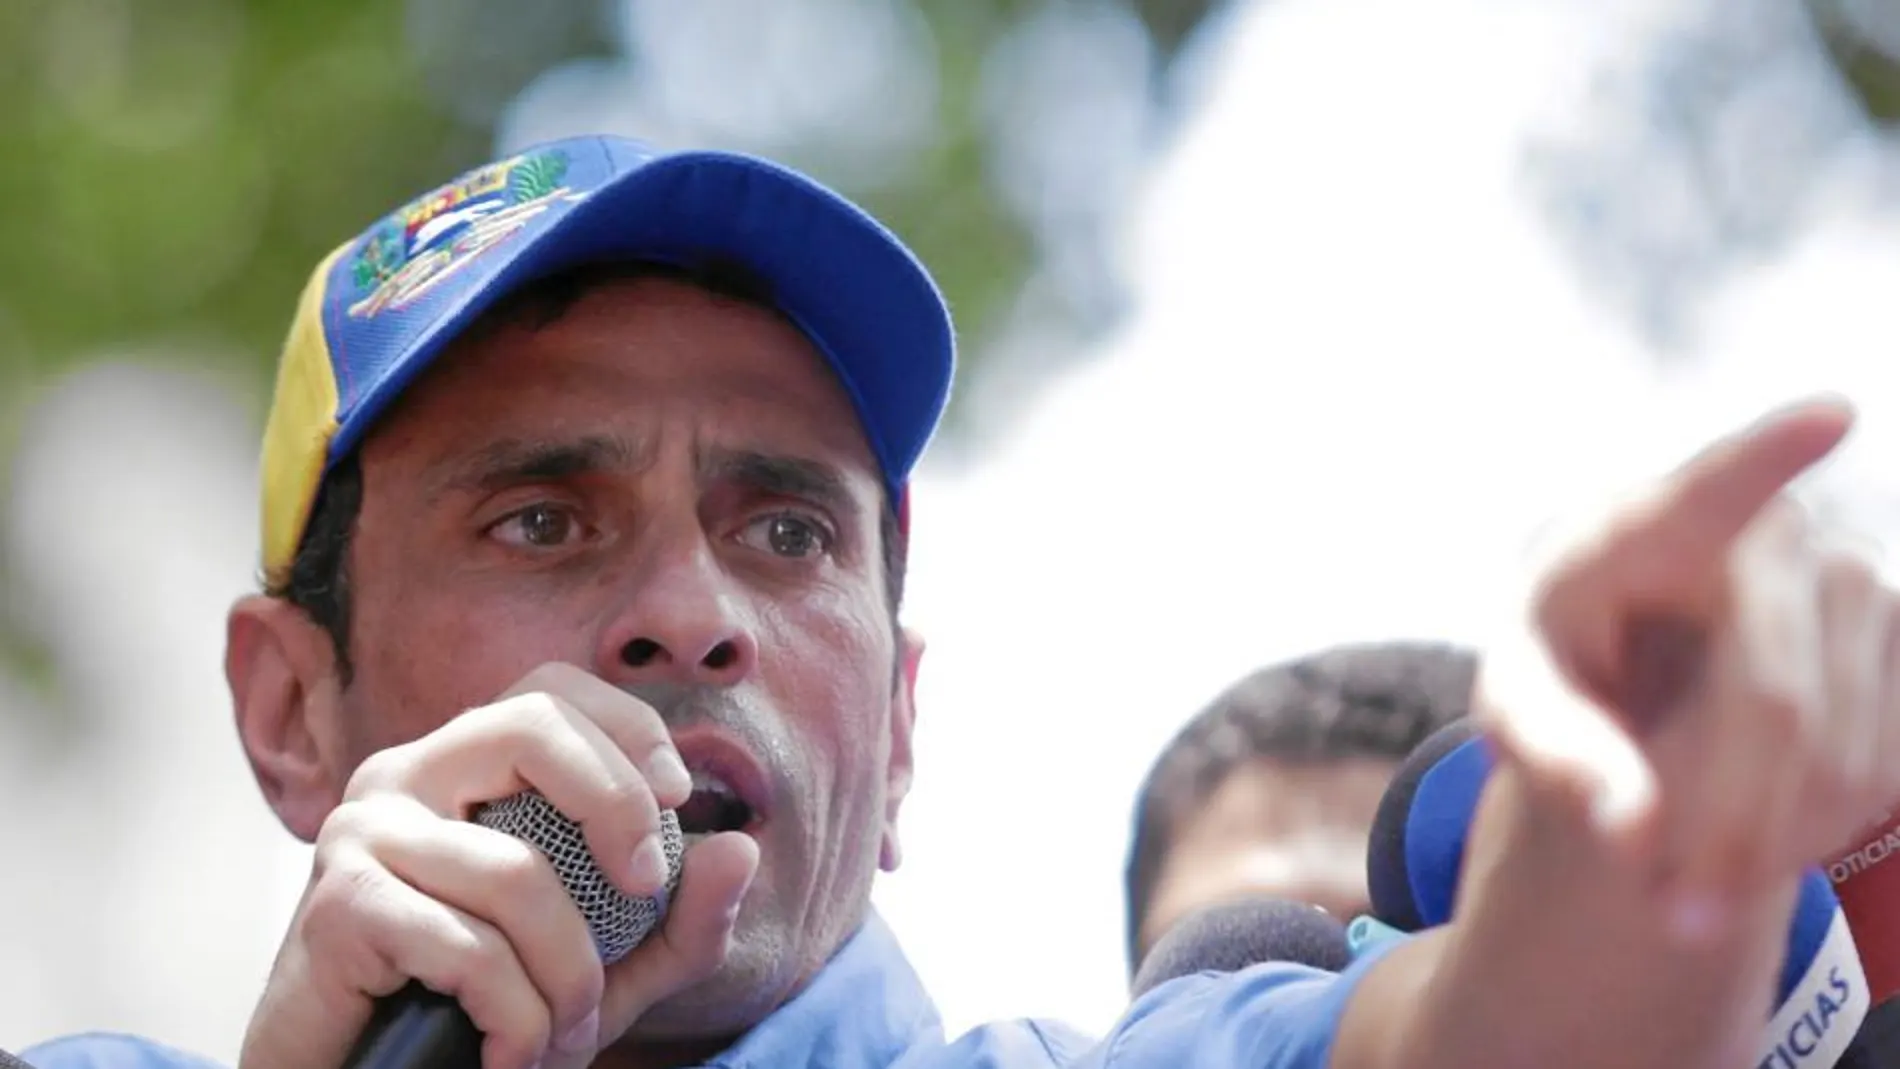 El líder opositor venezolano Henrique Capriles